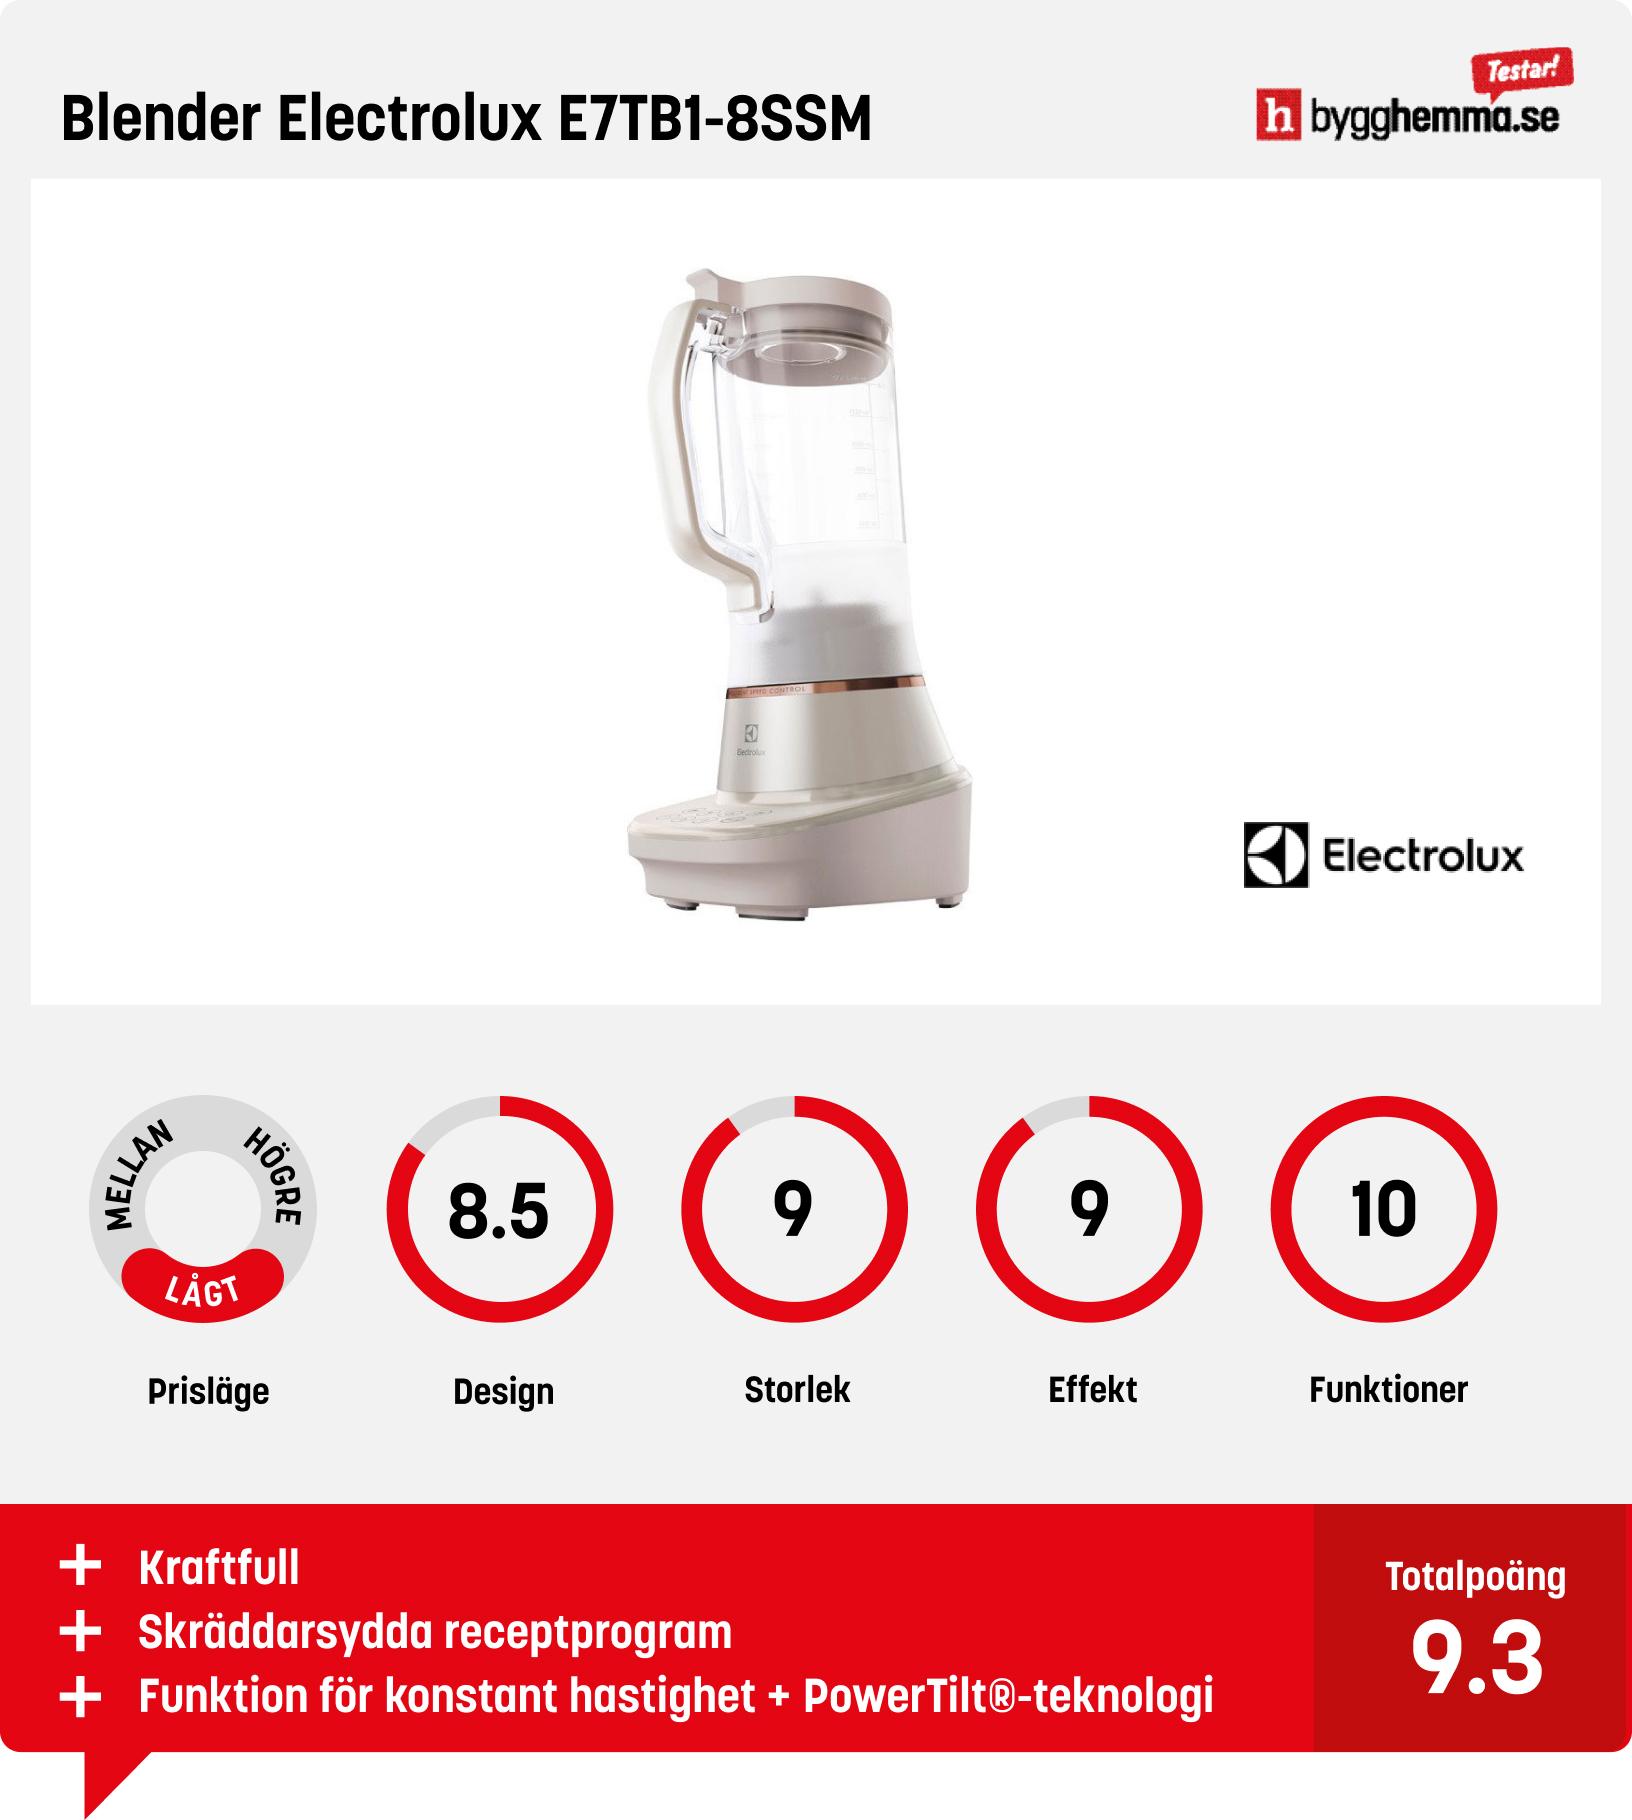 Blender bäst i test - Blender Electrolux E7TB1-8SSM